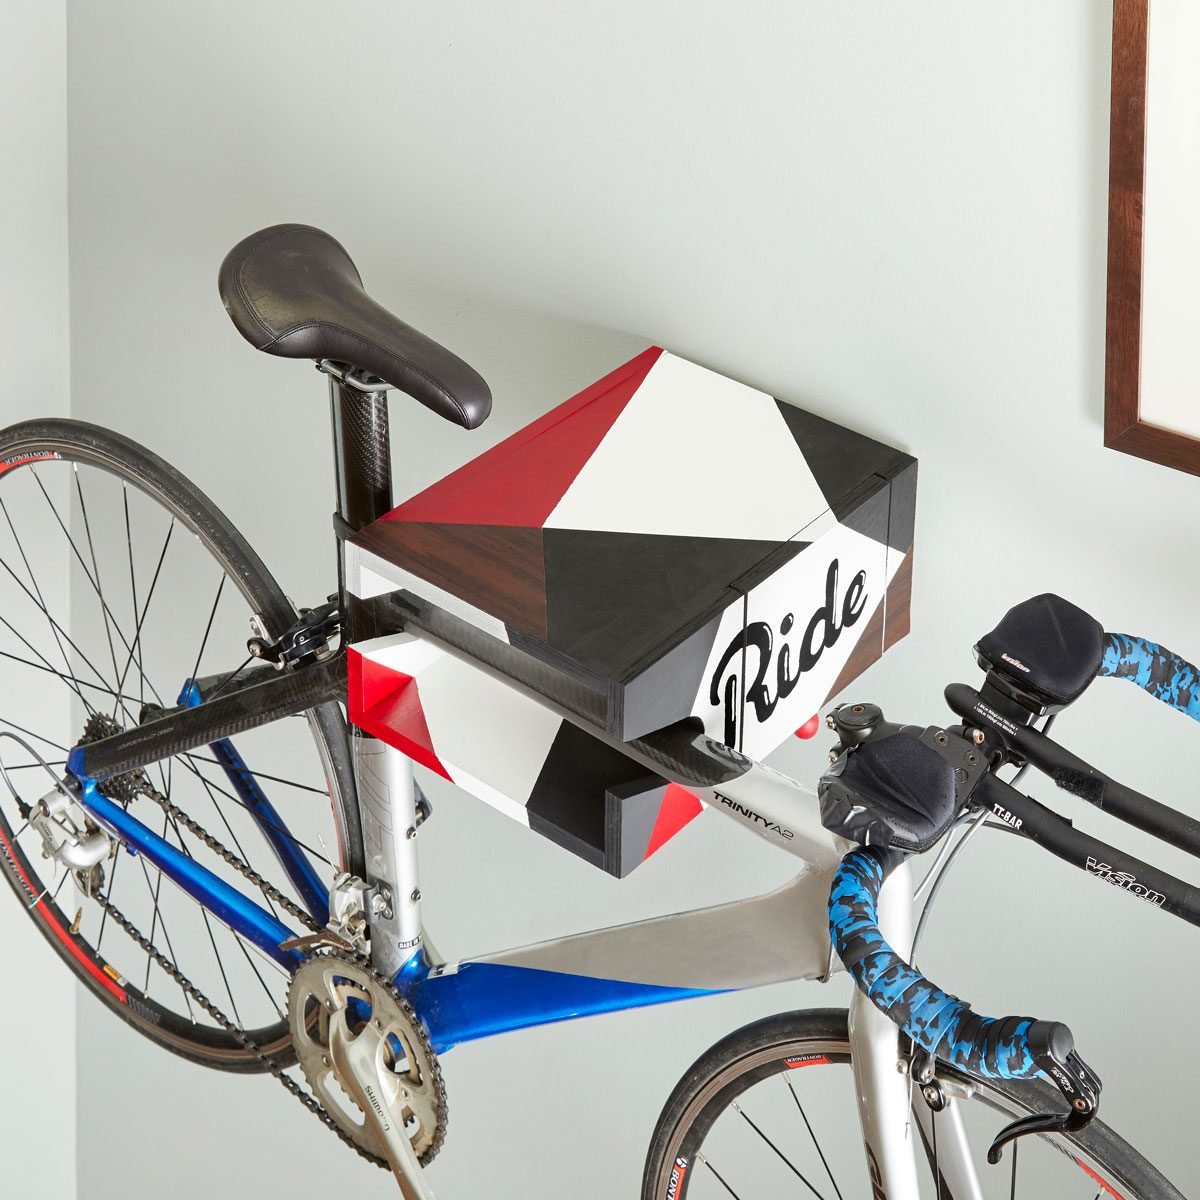 Buy Bicycle Hooks Garage Ceiling online